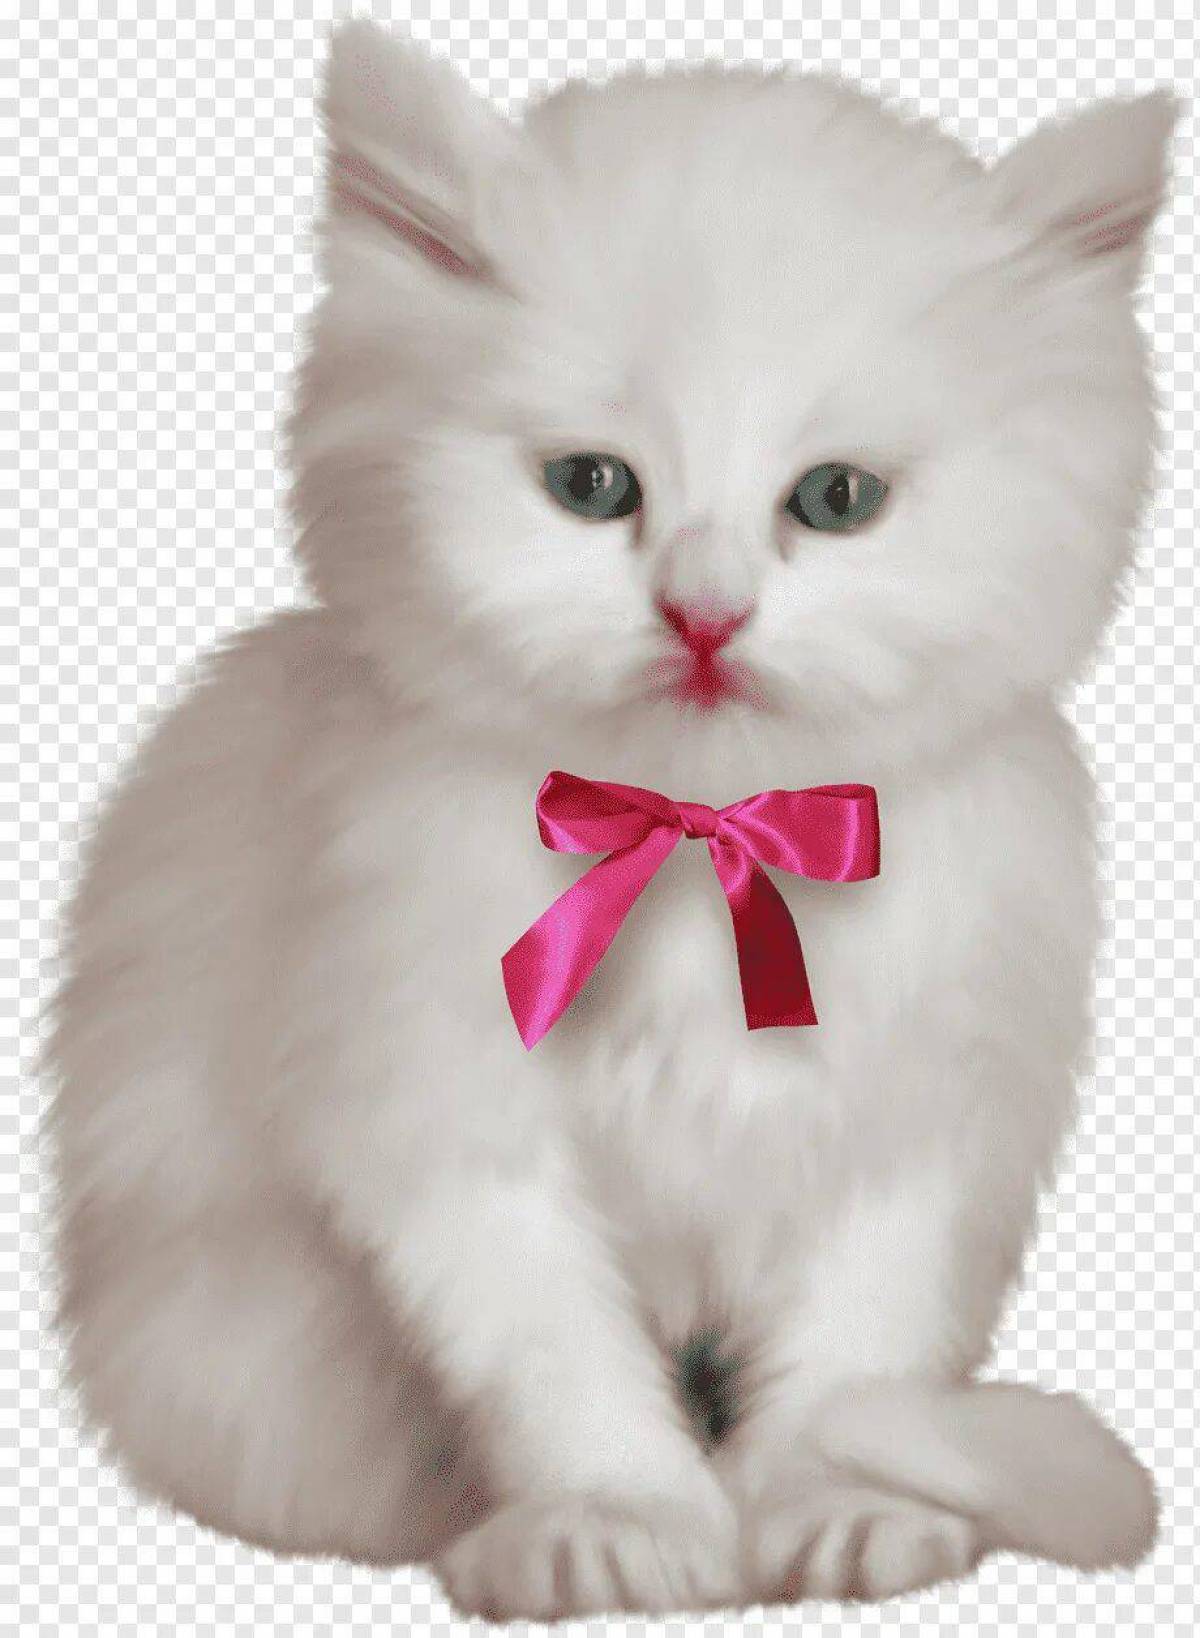 Кошечка с бантиком. Котенок с бантиком. Красивая кошечка с бантиком. Белый котенок с бантиком. Котенок на прозрачном фоне.